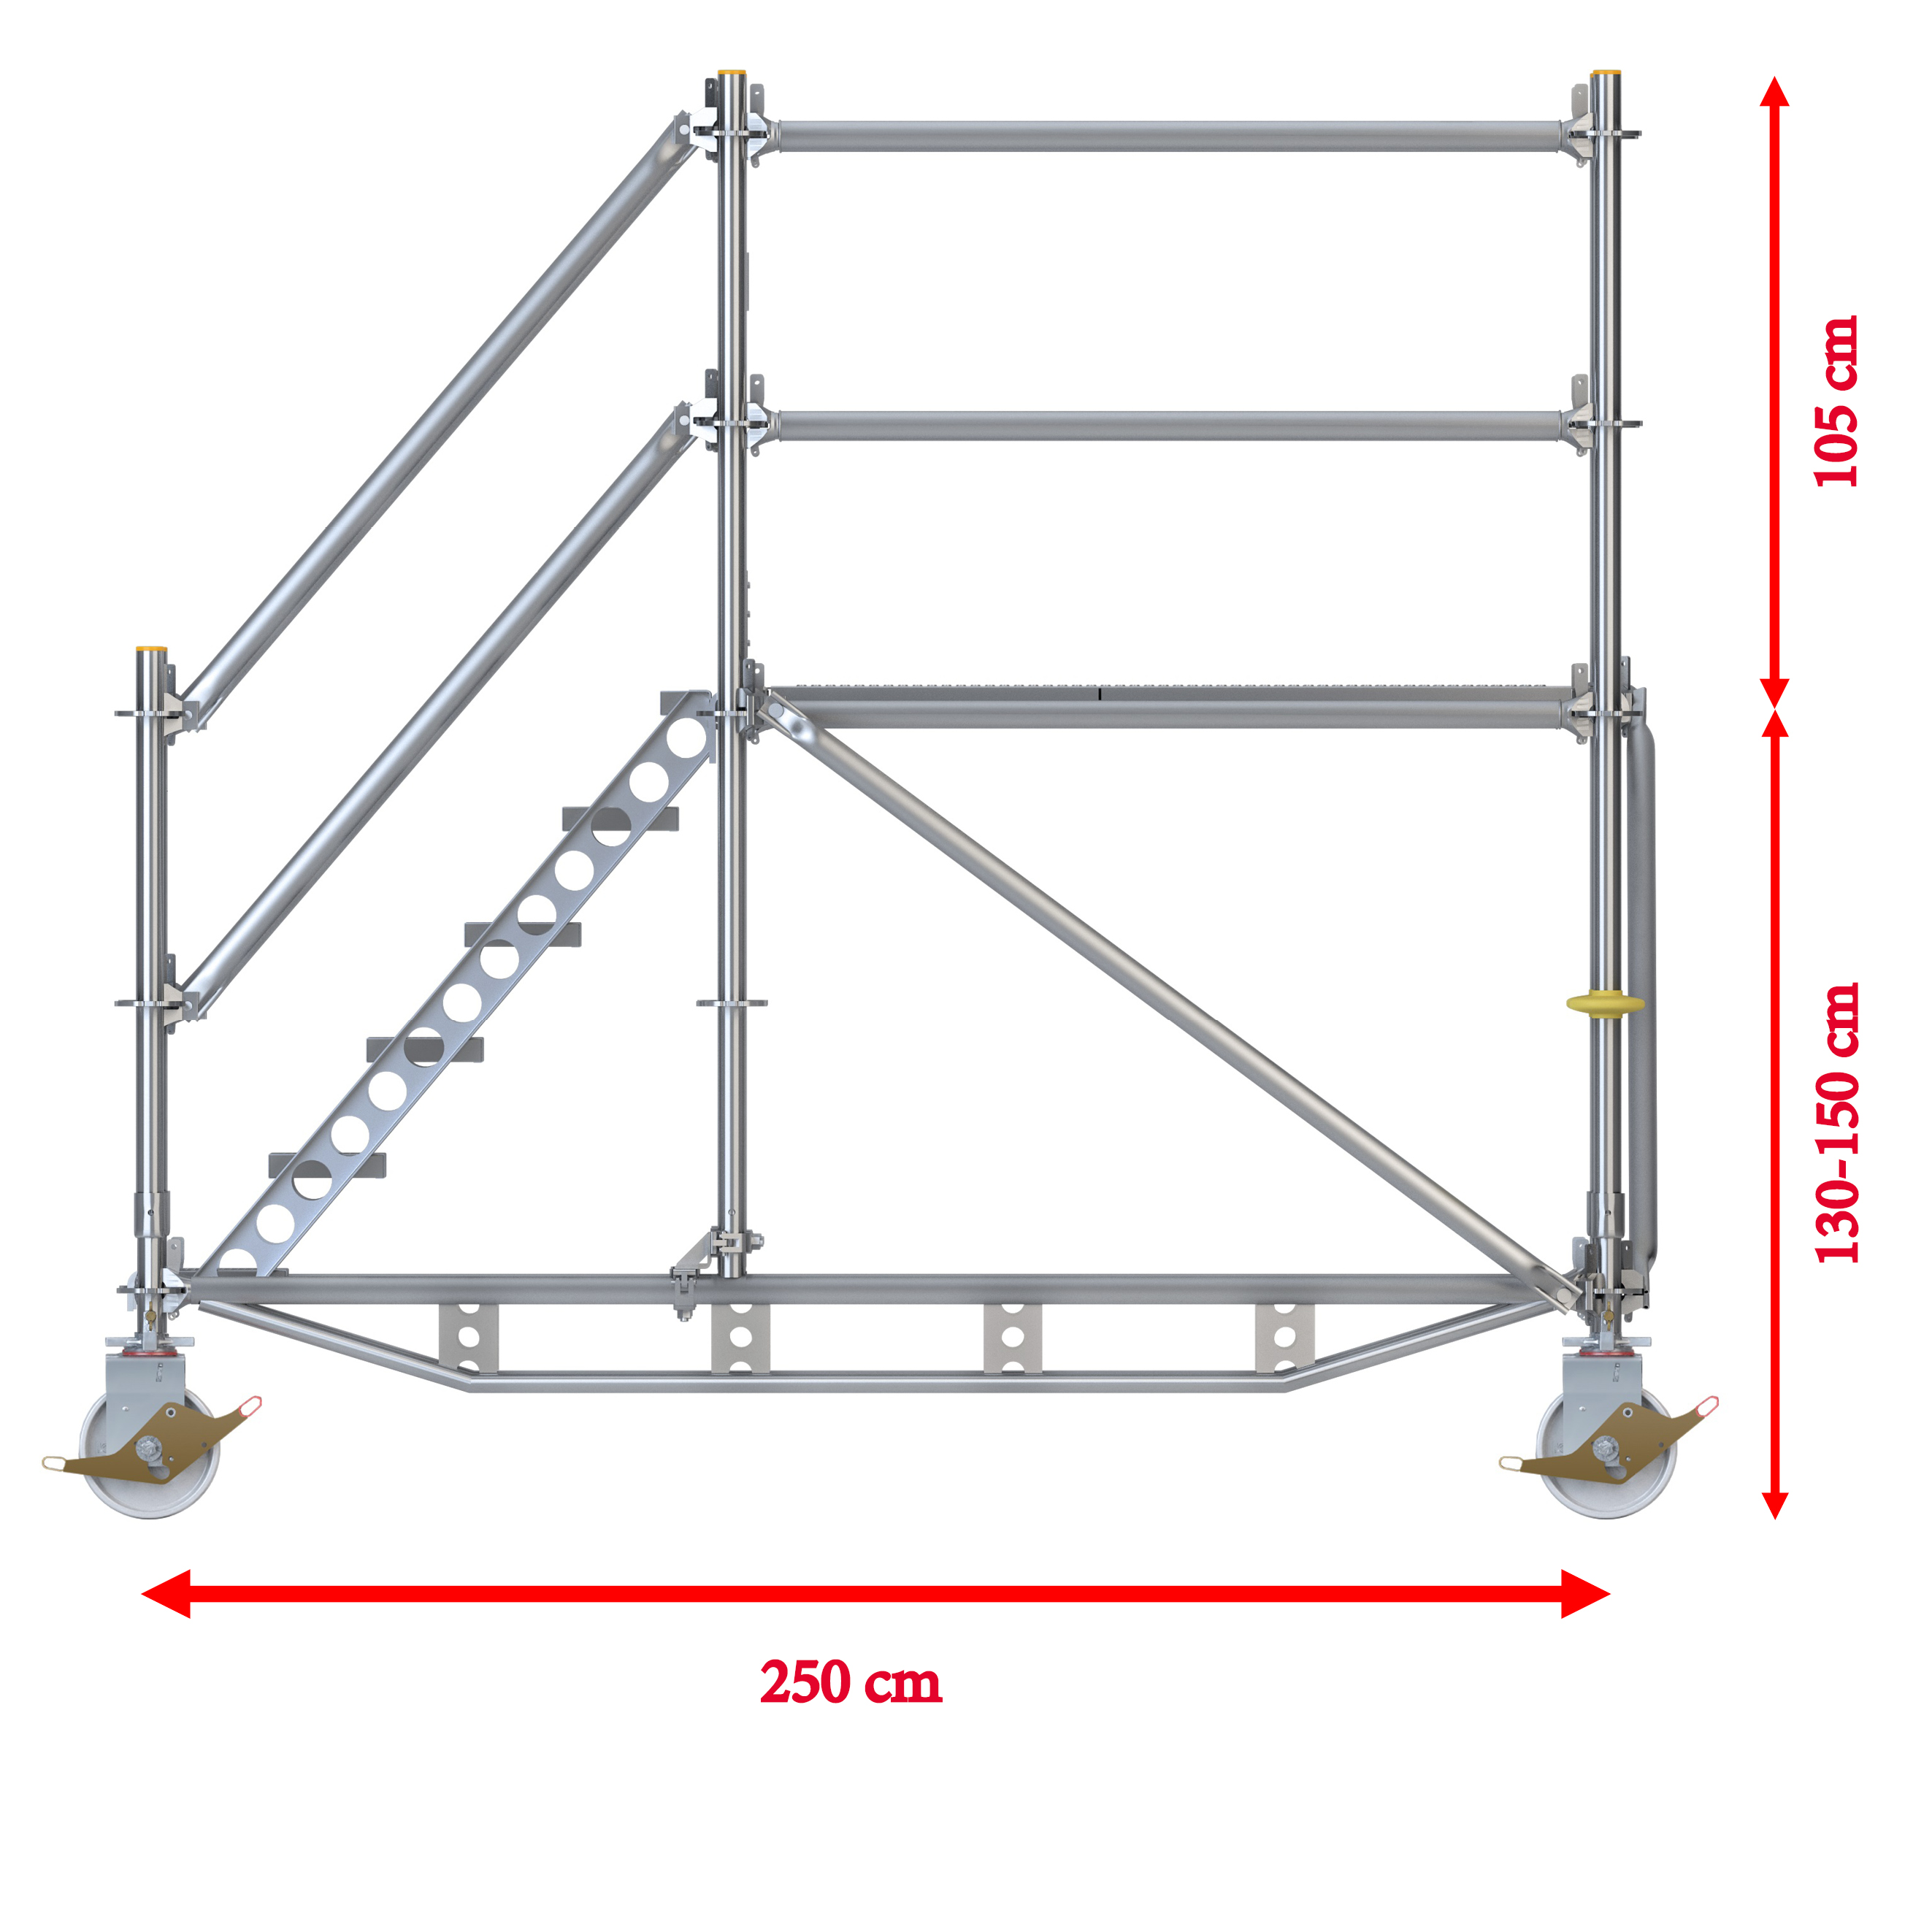 Fahrbare Plattformtreppe Ringscaff für 1 m Höhenunterschied mit Sicherheitstor 